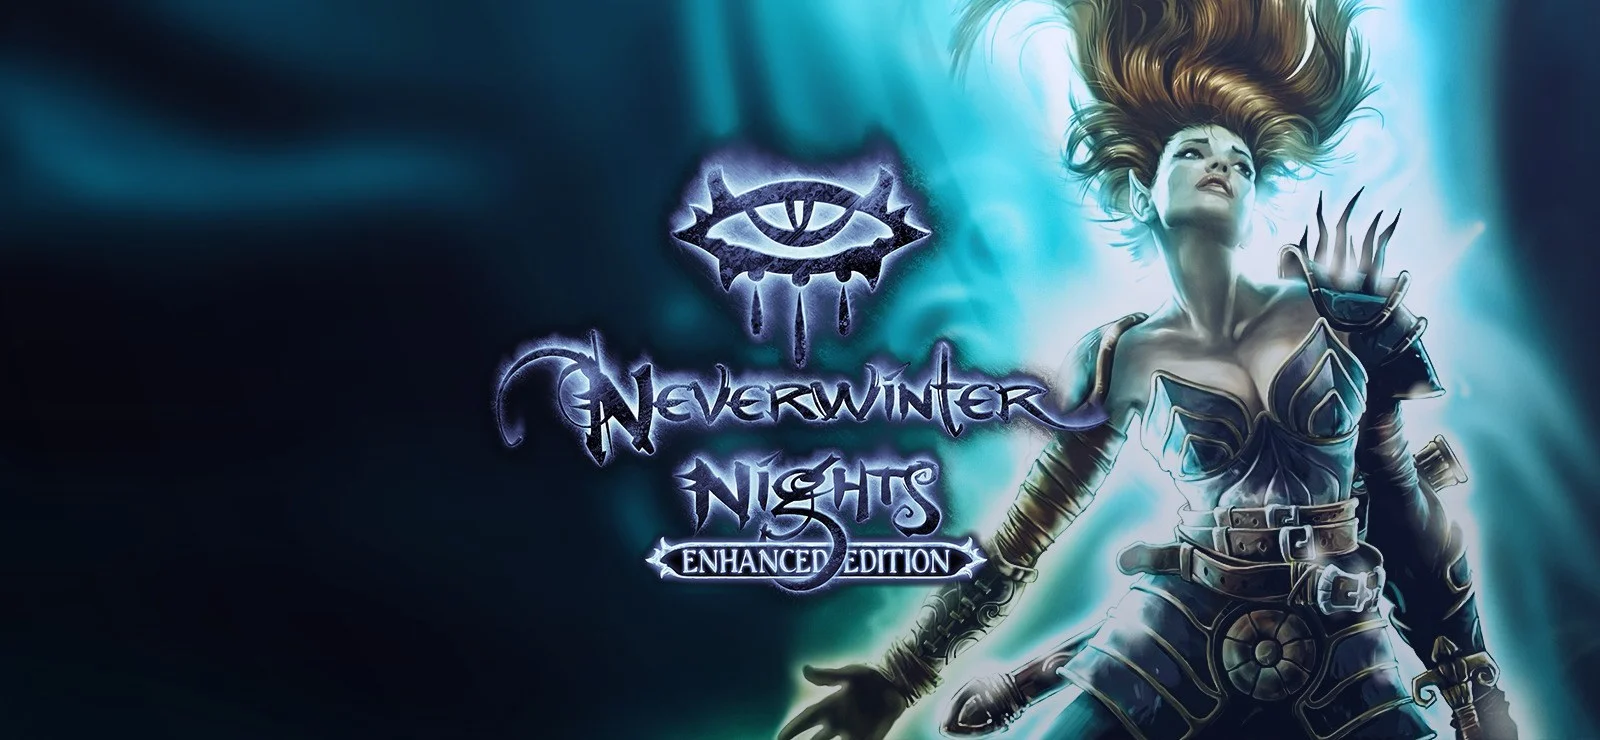 Объявлены даты релиза Baldurʼs Gate, Neverwinter Nights и других классических D&D RPG на консолях - фото 1